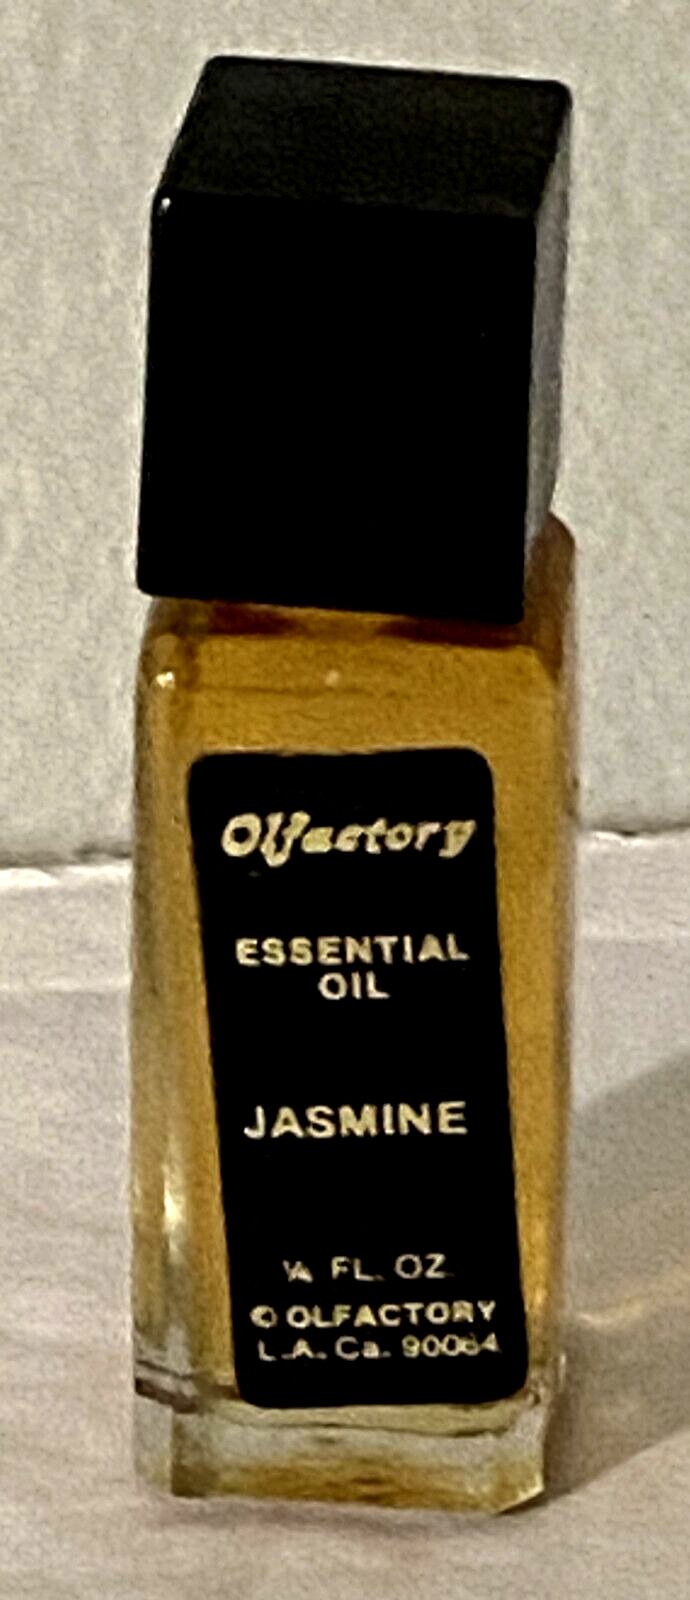 Vintage Olfactory Ca Corp Honeysuckle Essential Oil Perfume Jasmine 1/4 Oz